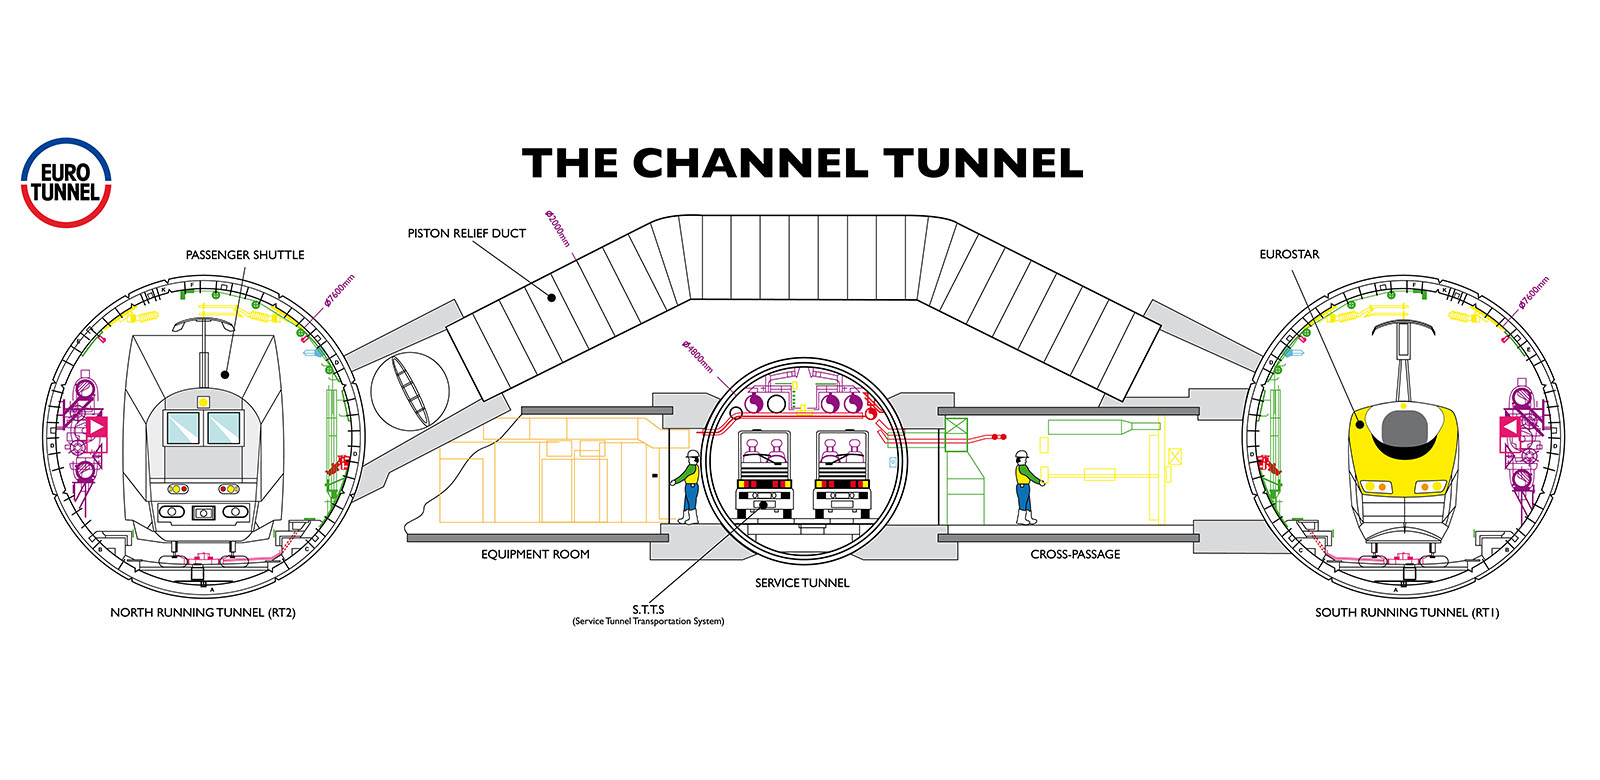 Munching Ga wandelen Niet verwacht The Channel Tunnel - Eurotunnel